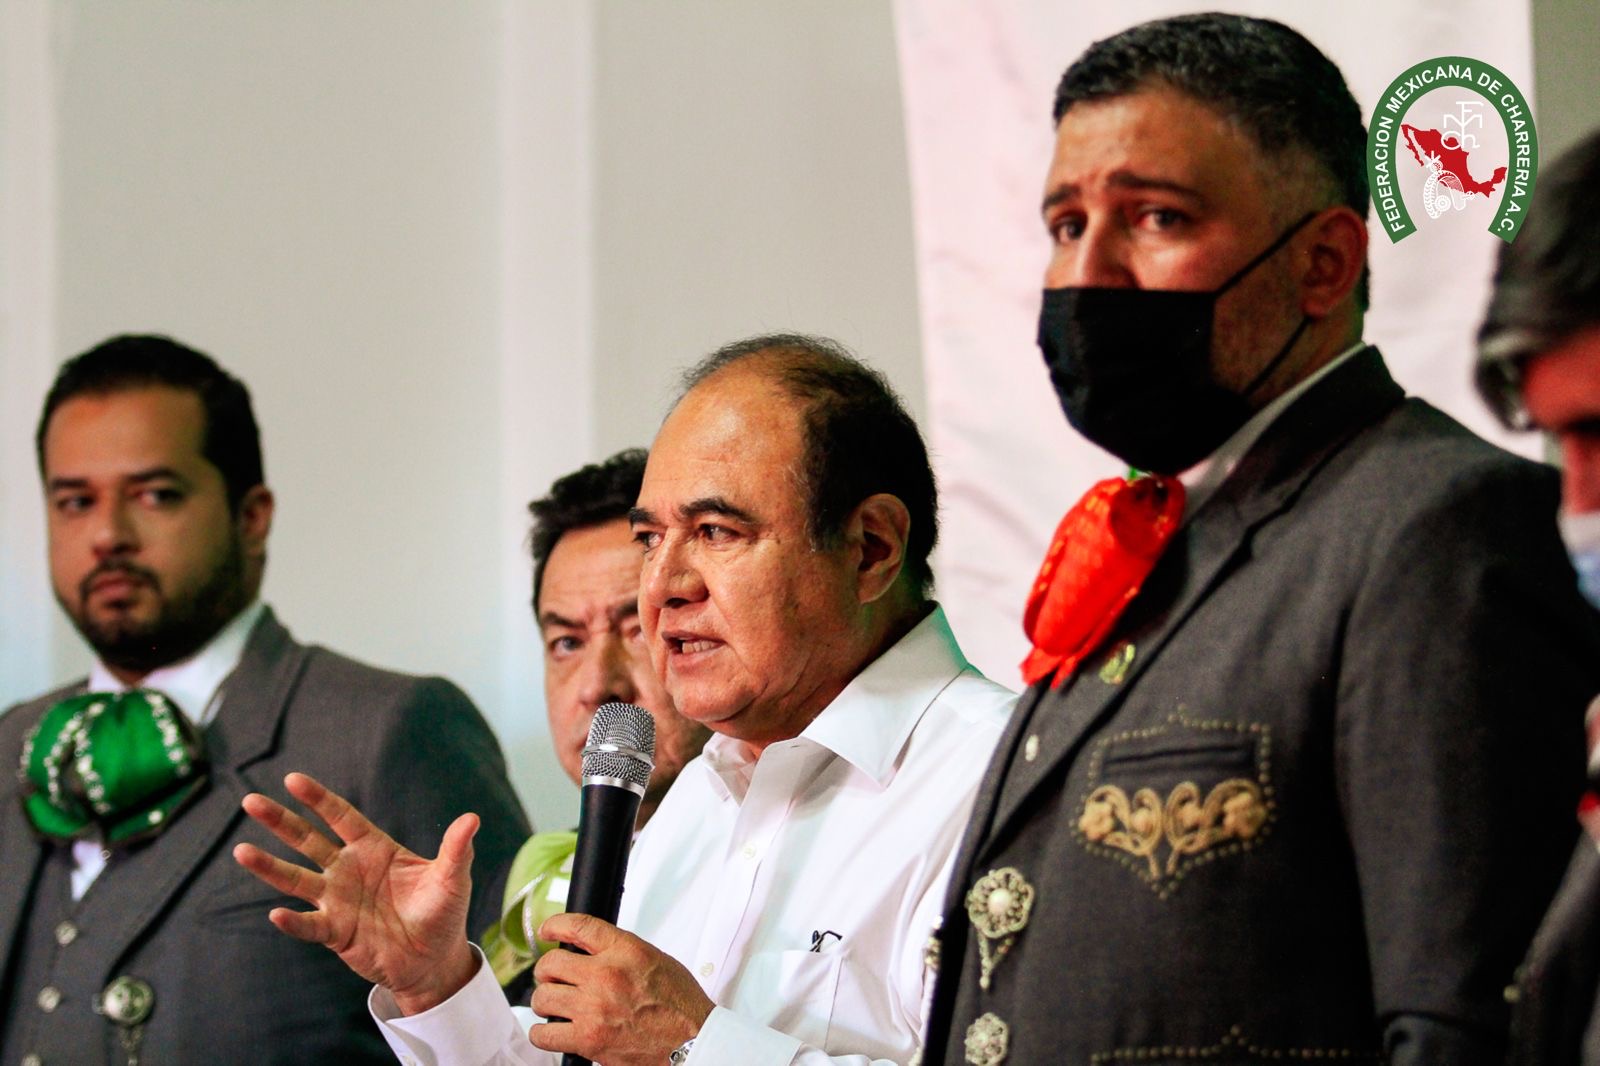 Le Roy Barragán, secretario de Turismo de Zacatecas, presentó el Campeonato Nacional del Mezcal y la Plata que se celebrará del 25 de marzo al 3 de abril